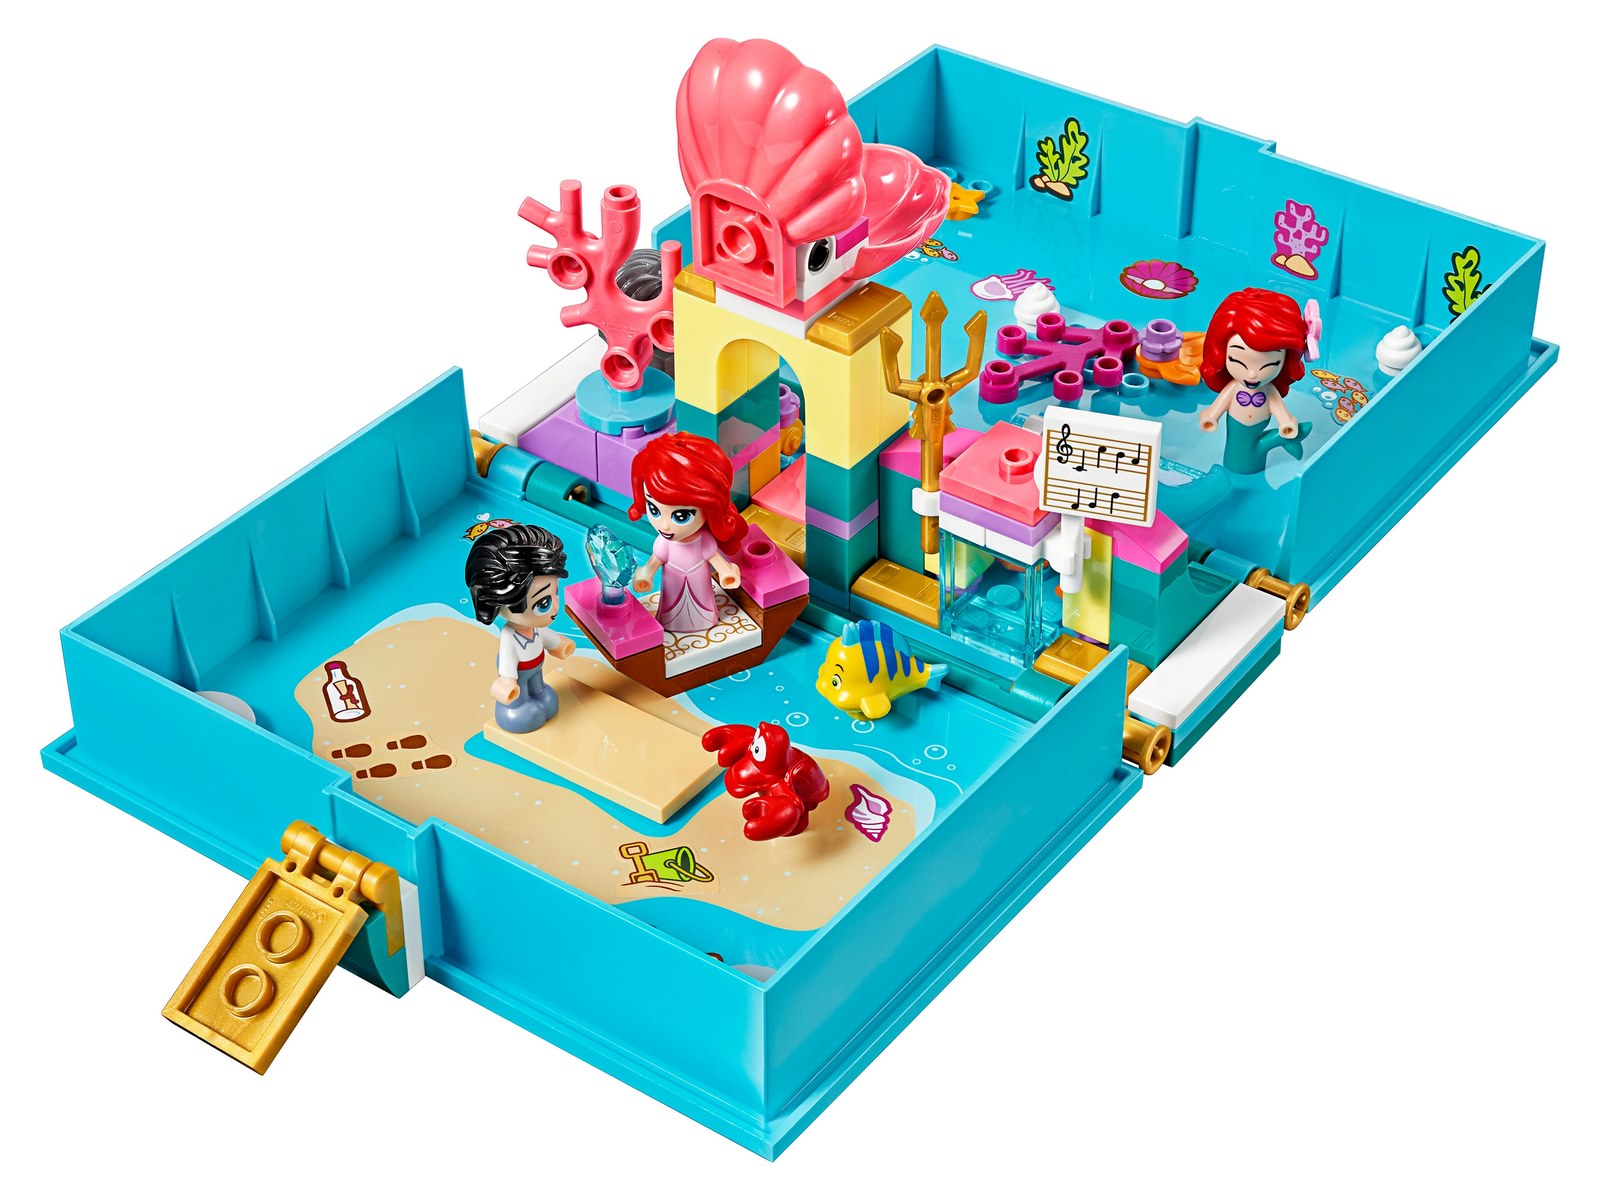 Конструктор LEGO Disney Princess «Книга сказочных приключений Ариэль» 43176 / 105 деталей